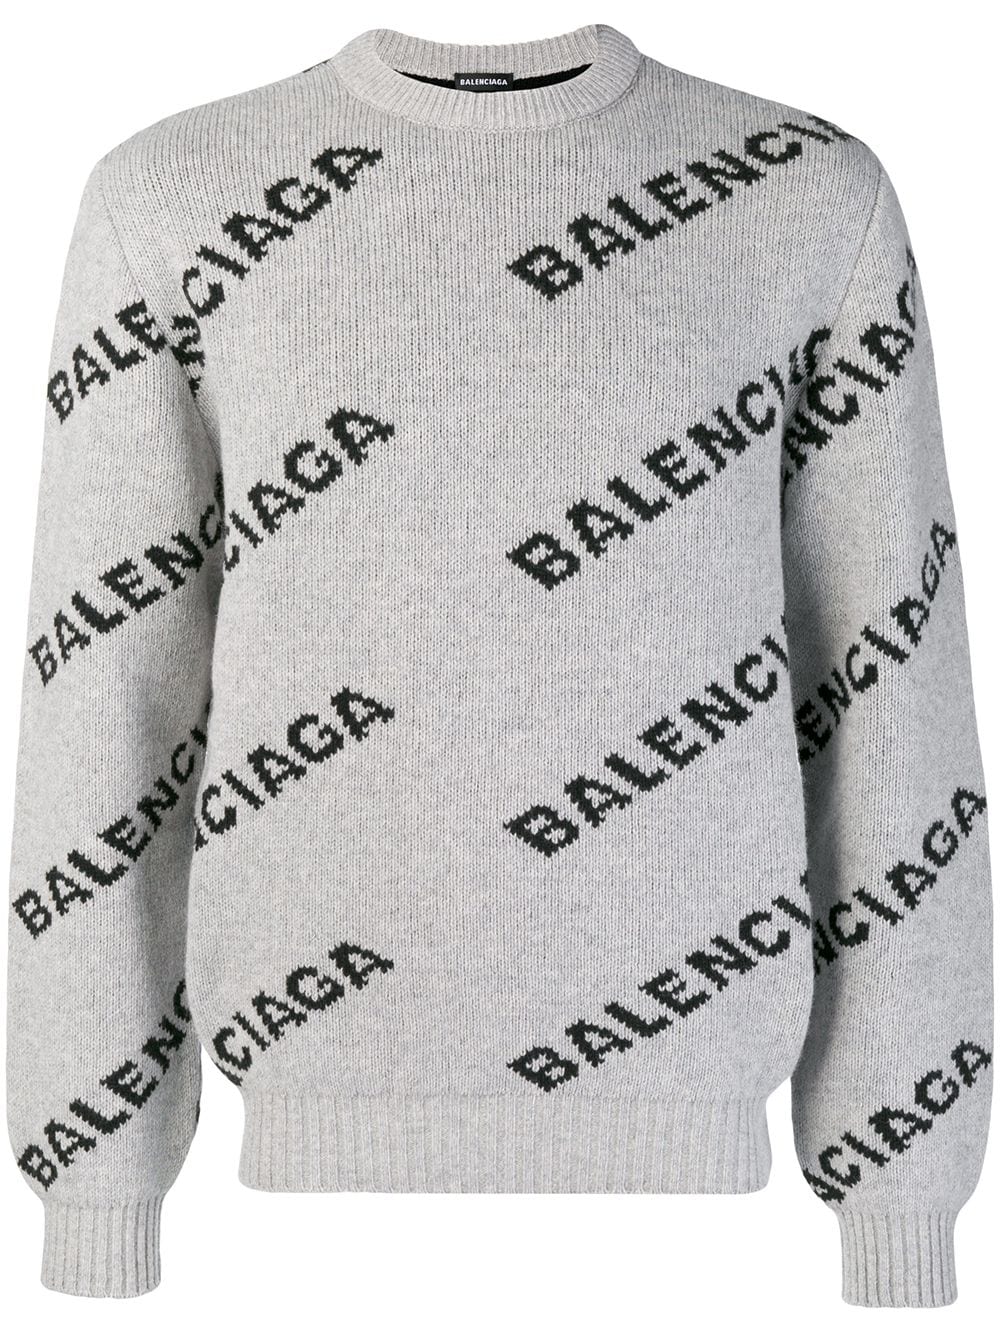 Balenciaga logo crew neck sweater